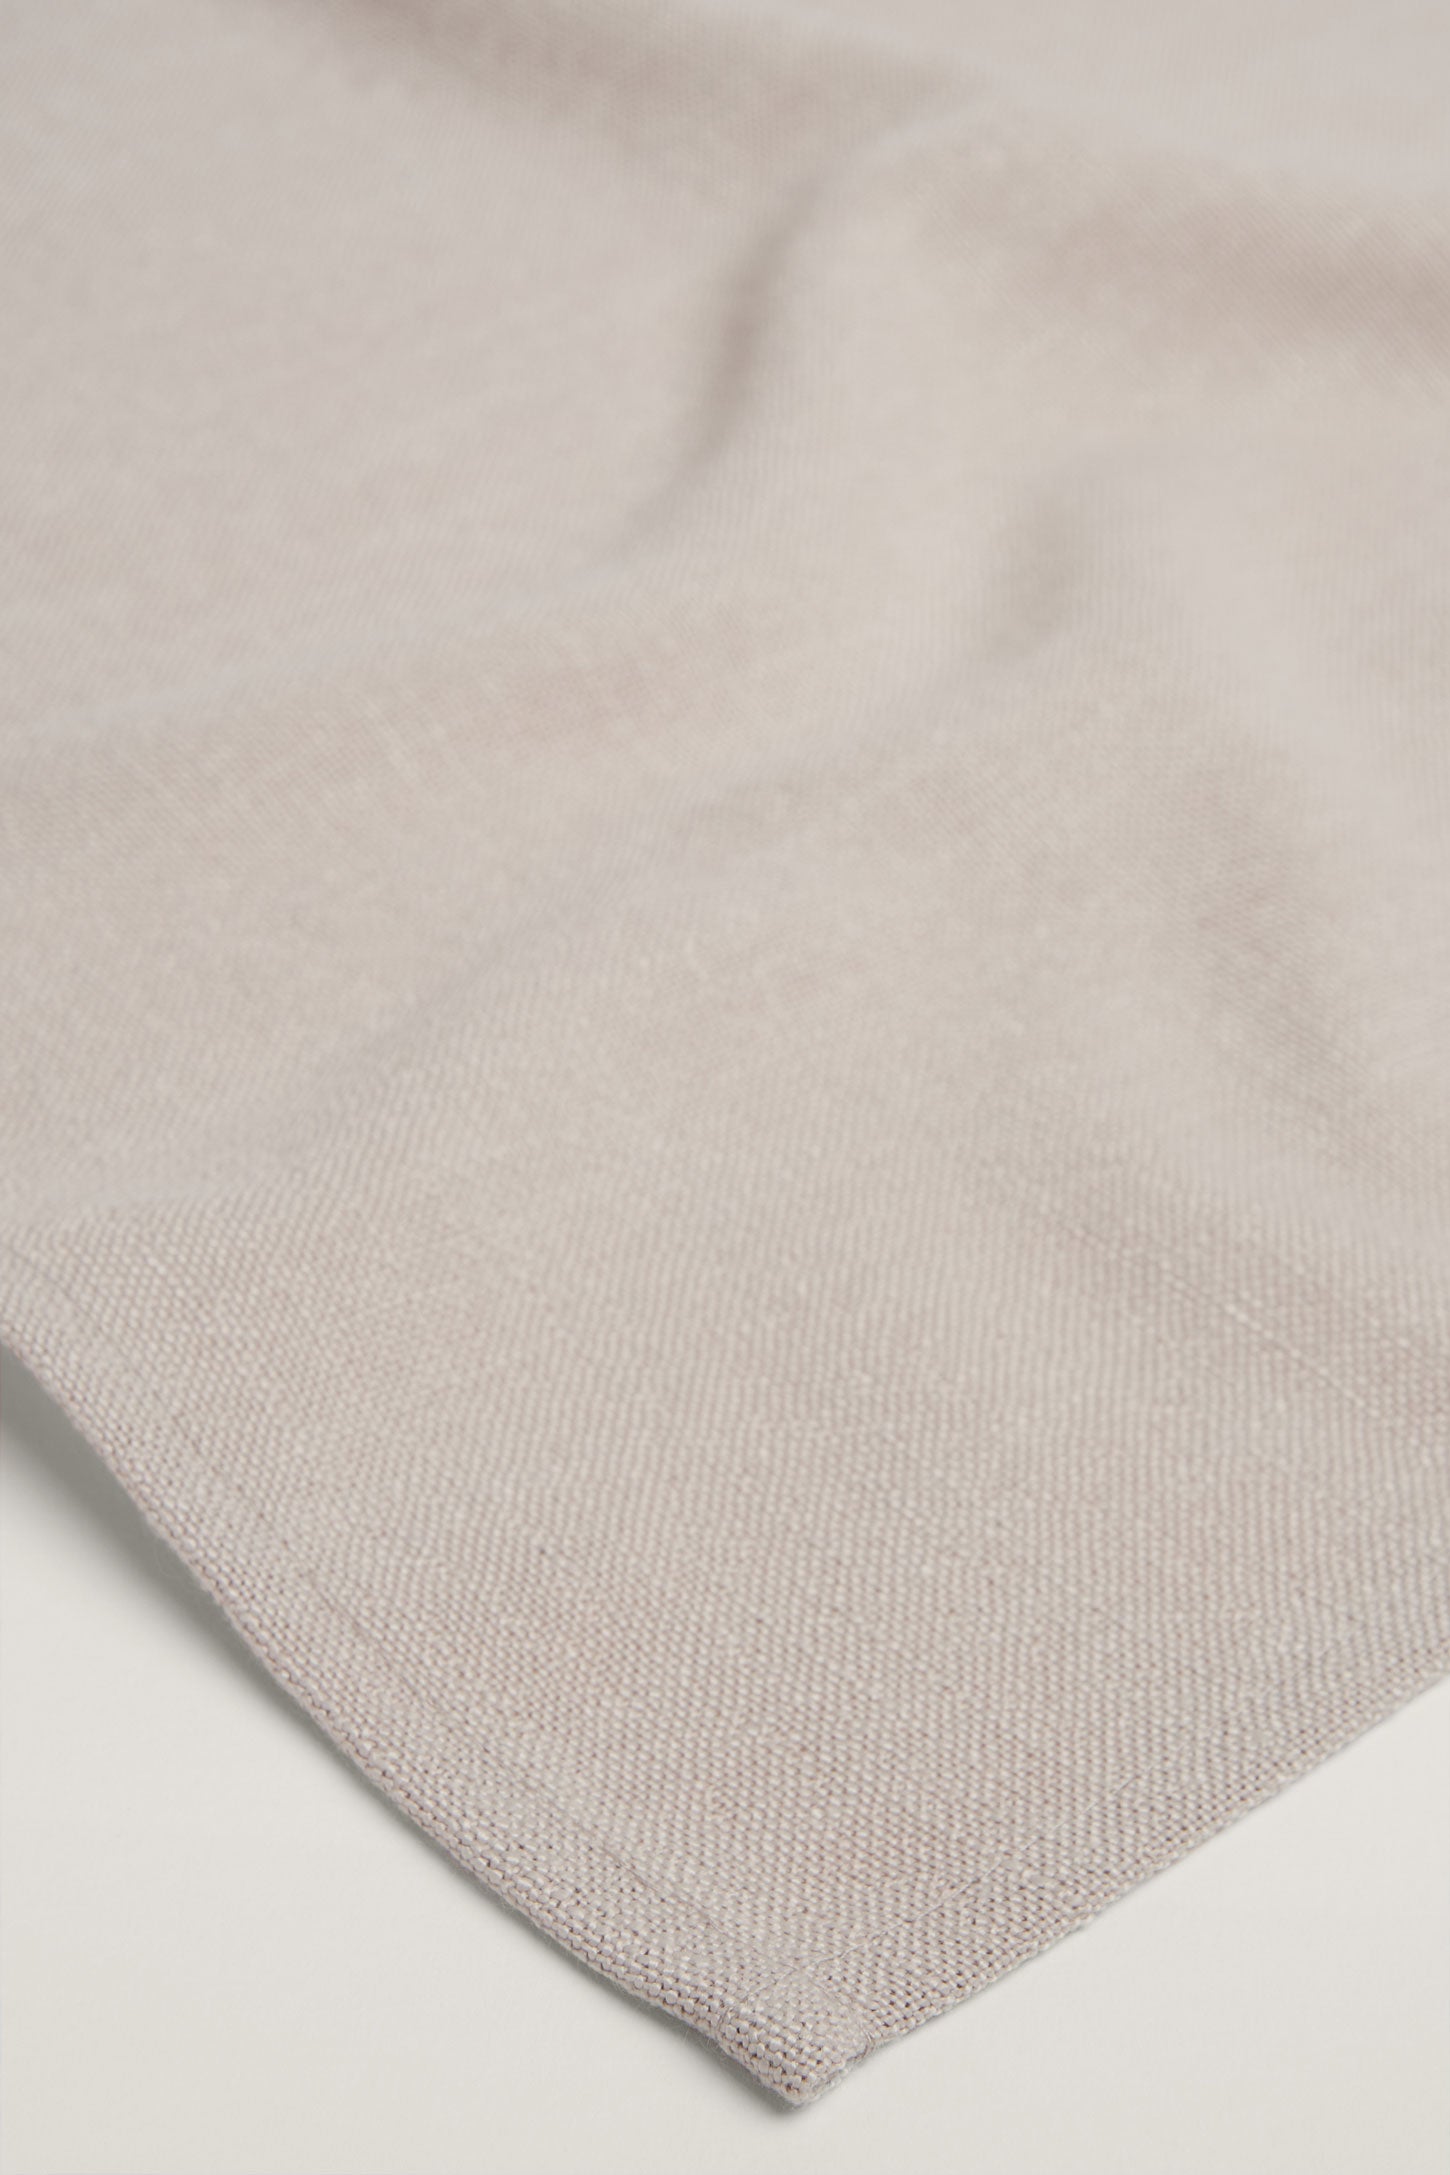 Paquet de 4 serviettes de table texture lin, 2/20$ - Maison && OATMEAL